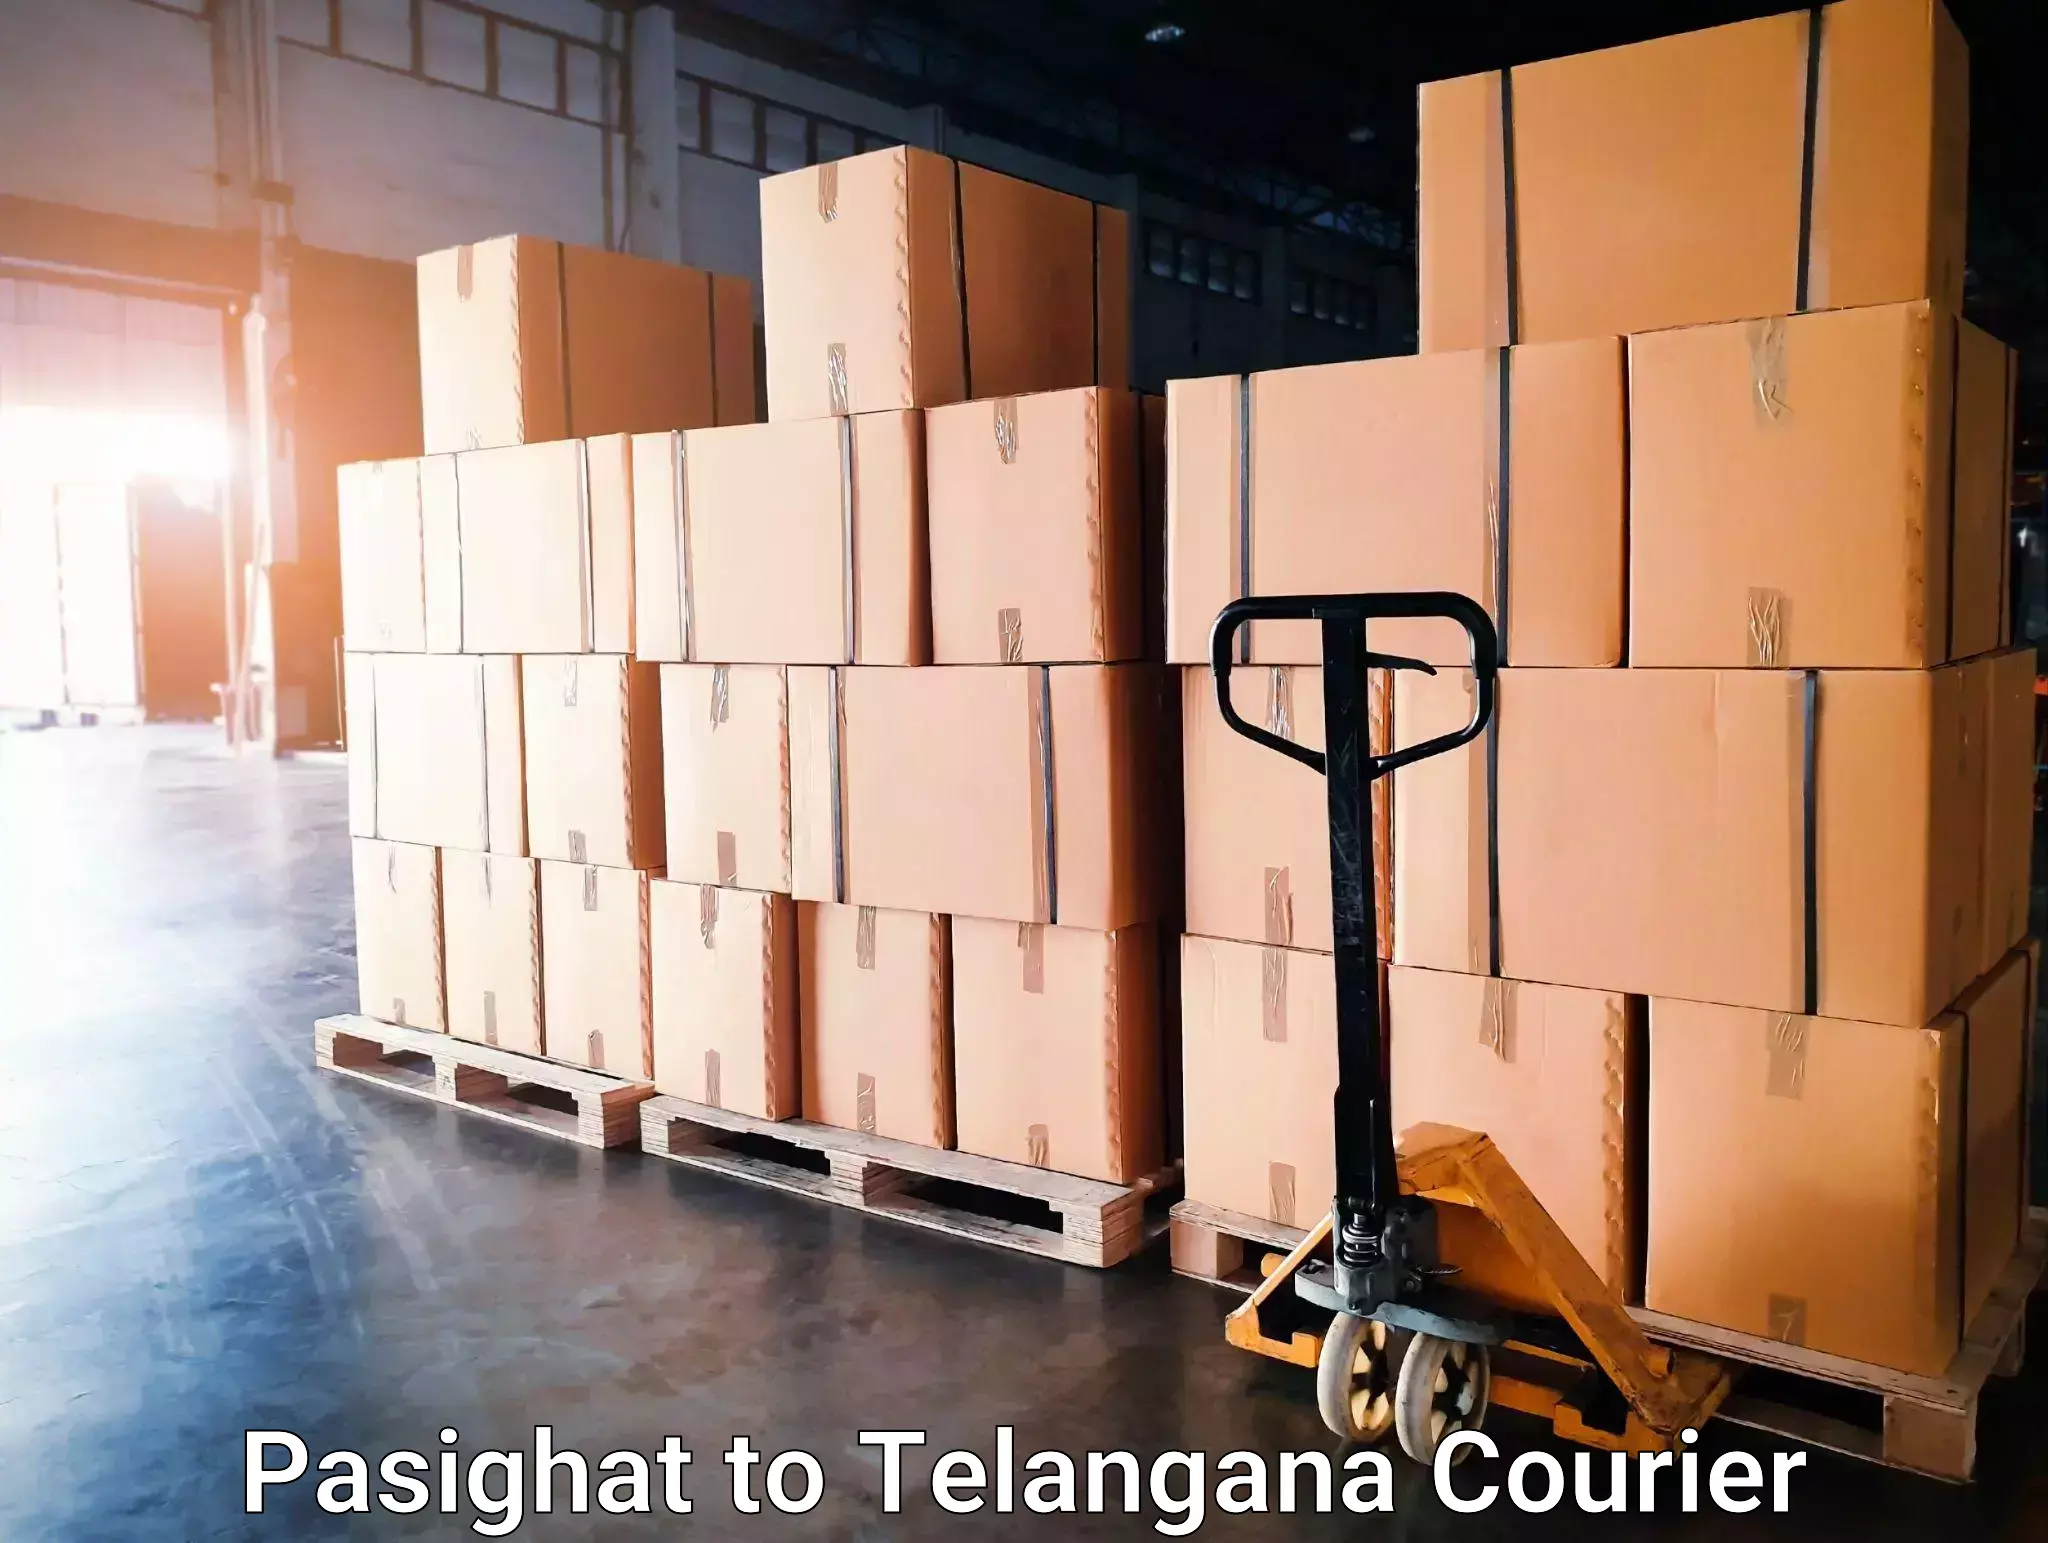 Express package handling in Pasighat to Dharmapuri Jagtial